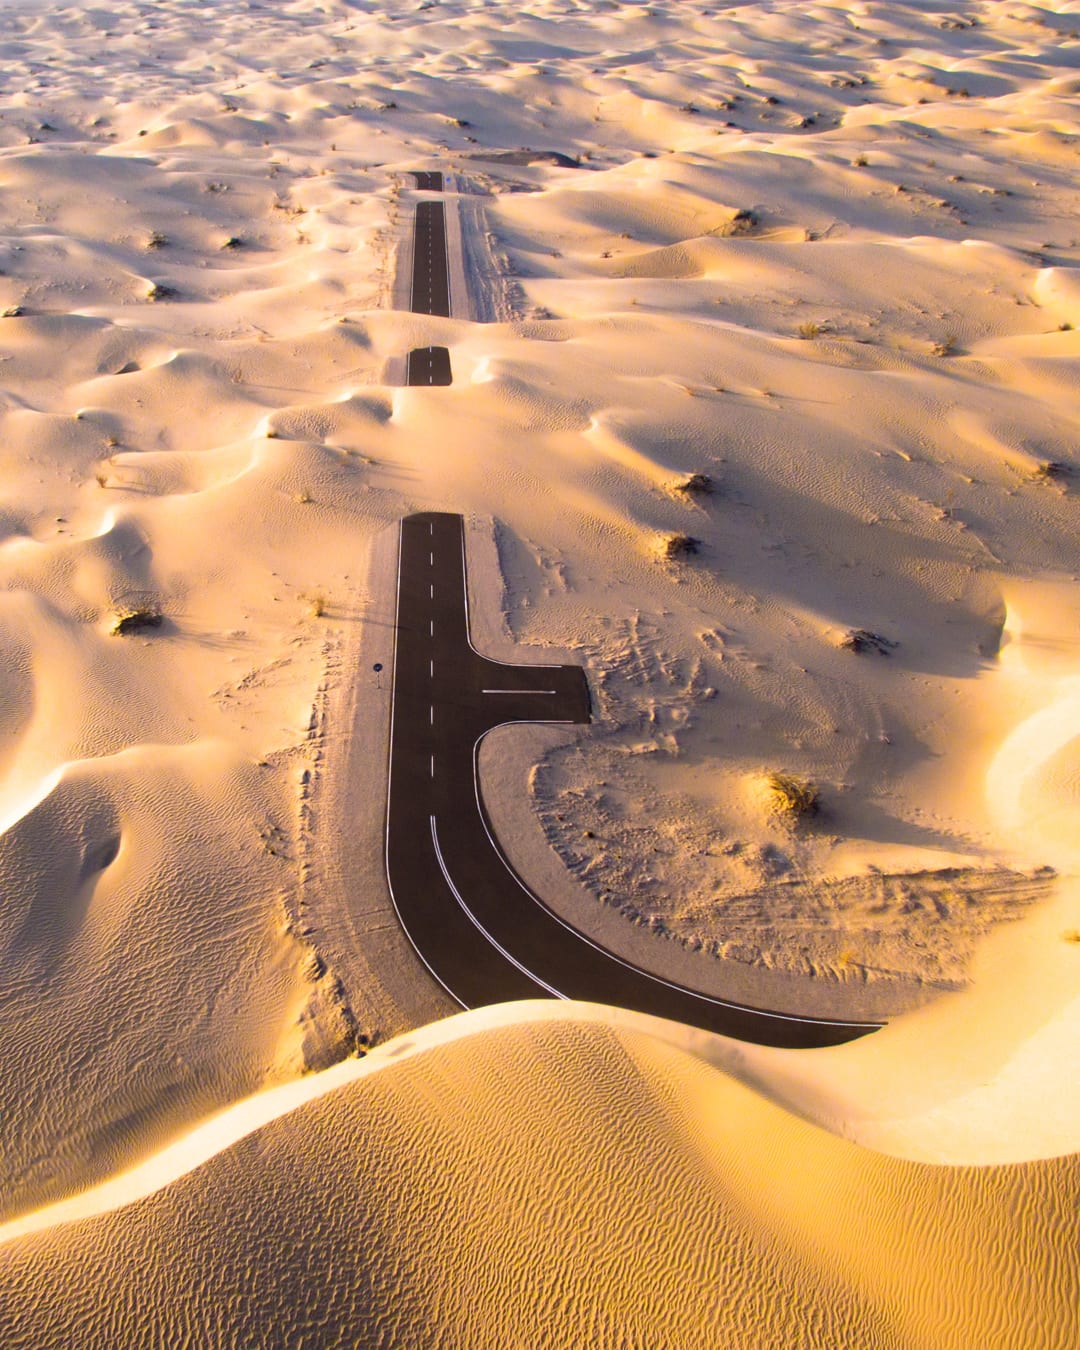 طريق مهجور تغطيه رمال صحراء أبوظبي